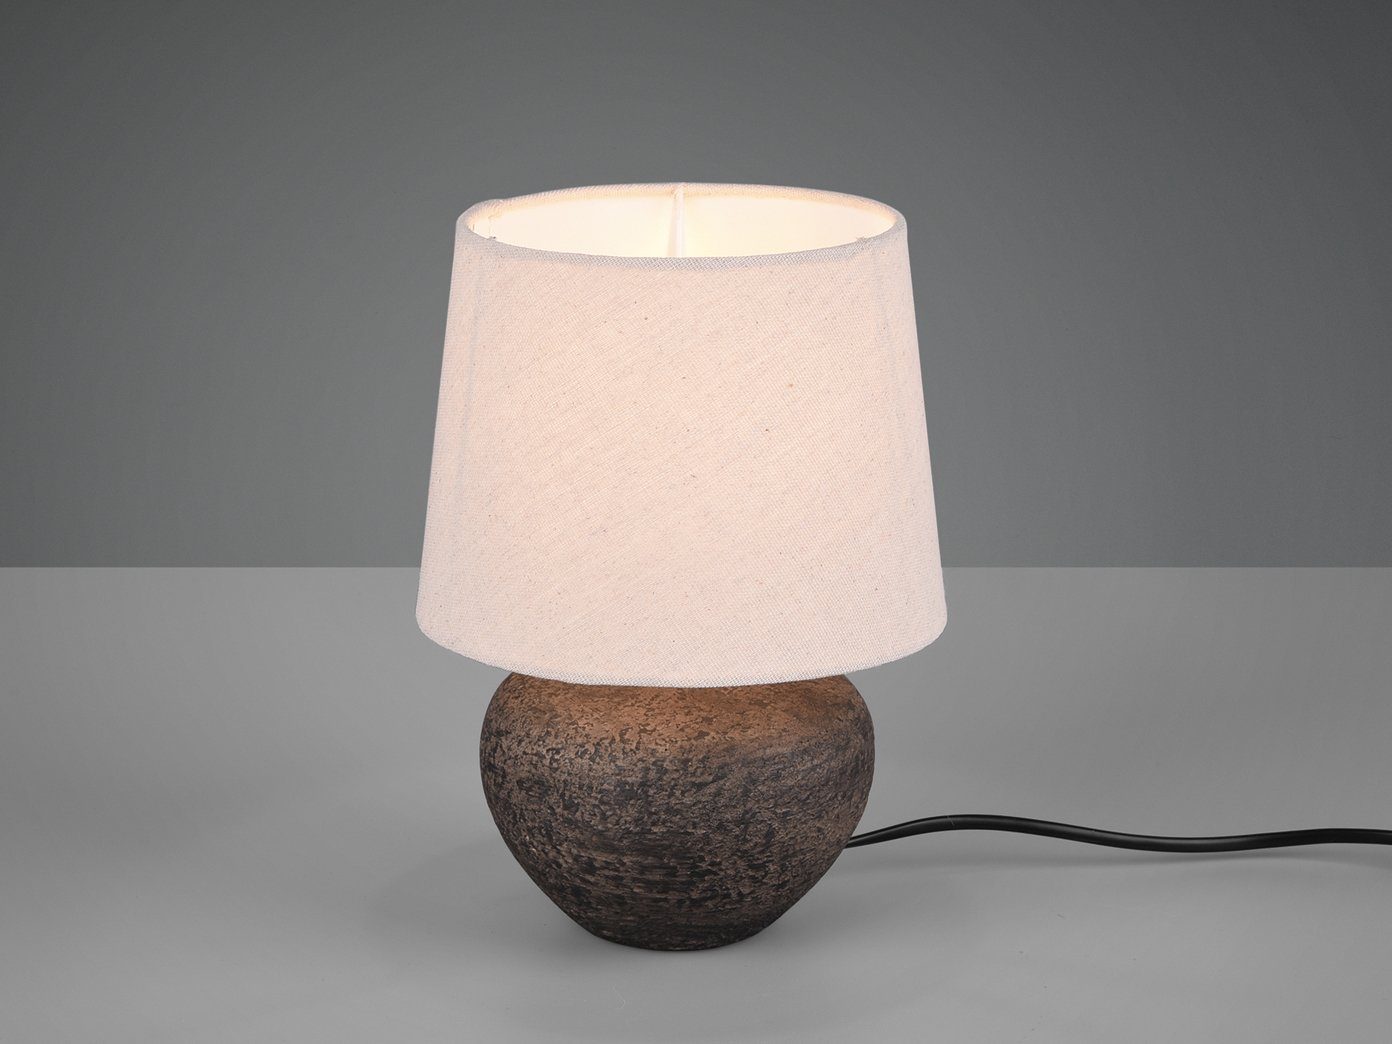 Design Tisch Beleuchtung weiß Arbeits Zimmer Schalter Würfel Keramik Lampe grau 